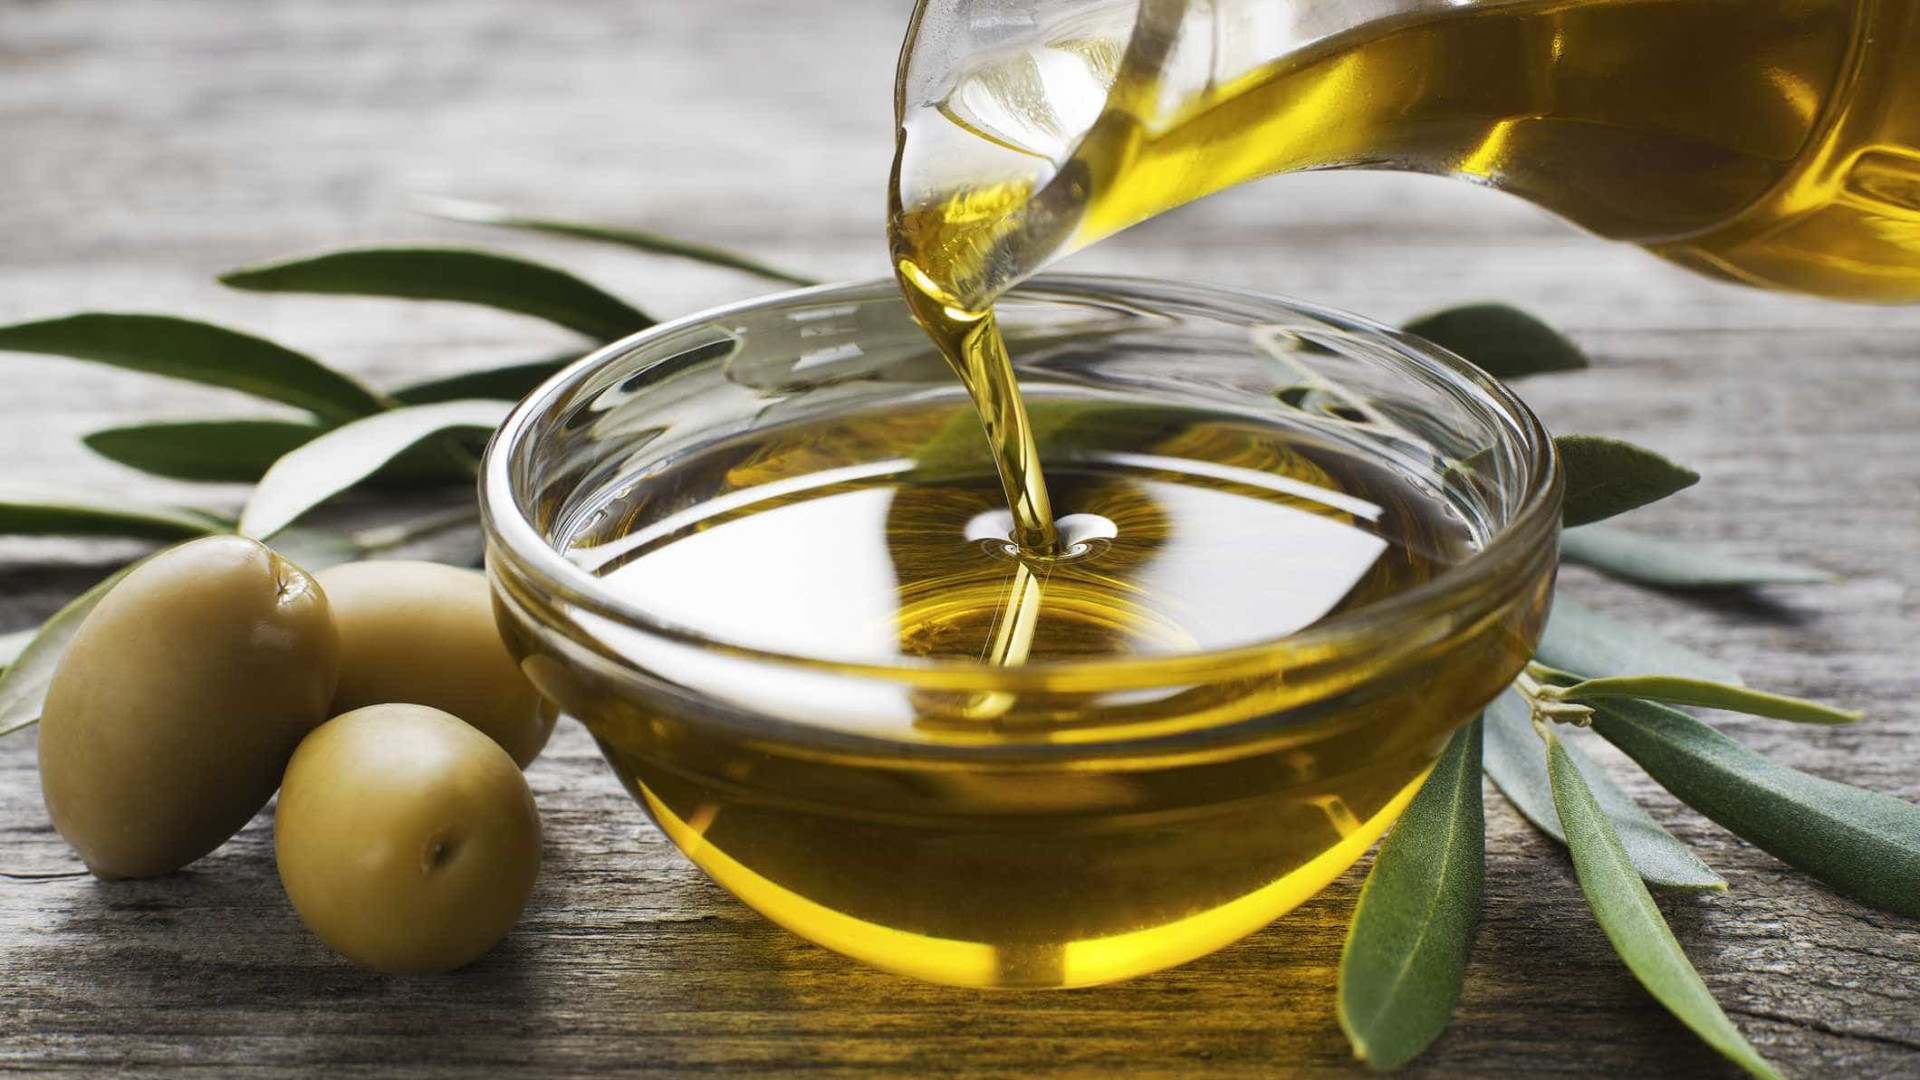 Ministério da Agricultura proíbe venda de 9 marcas de azeite de oliva